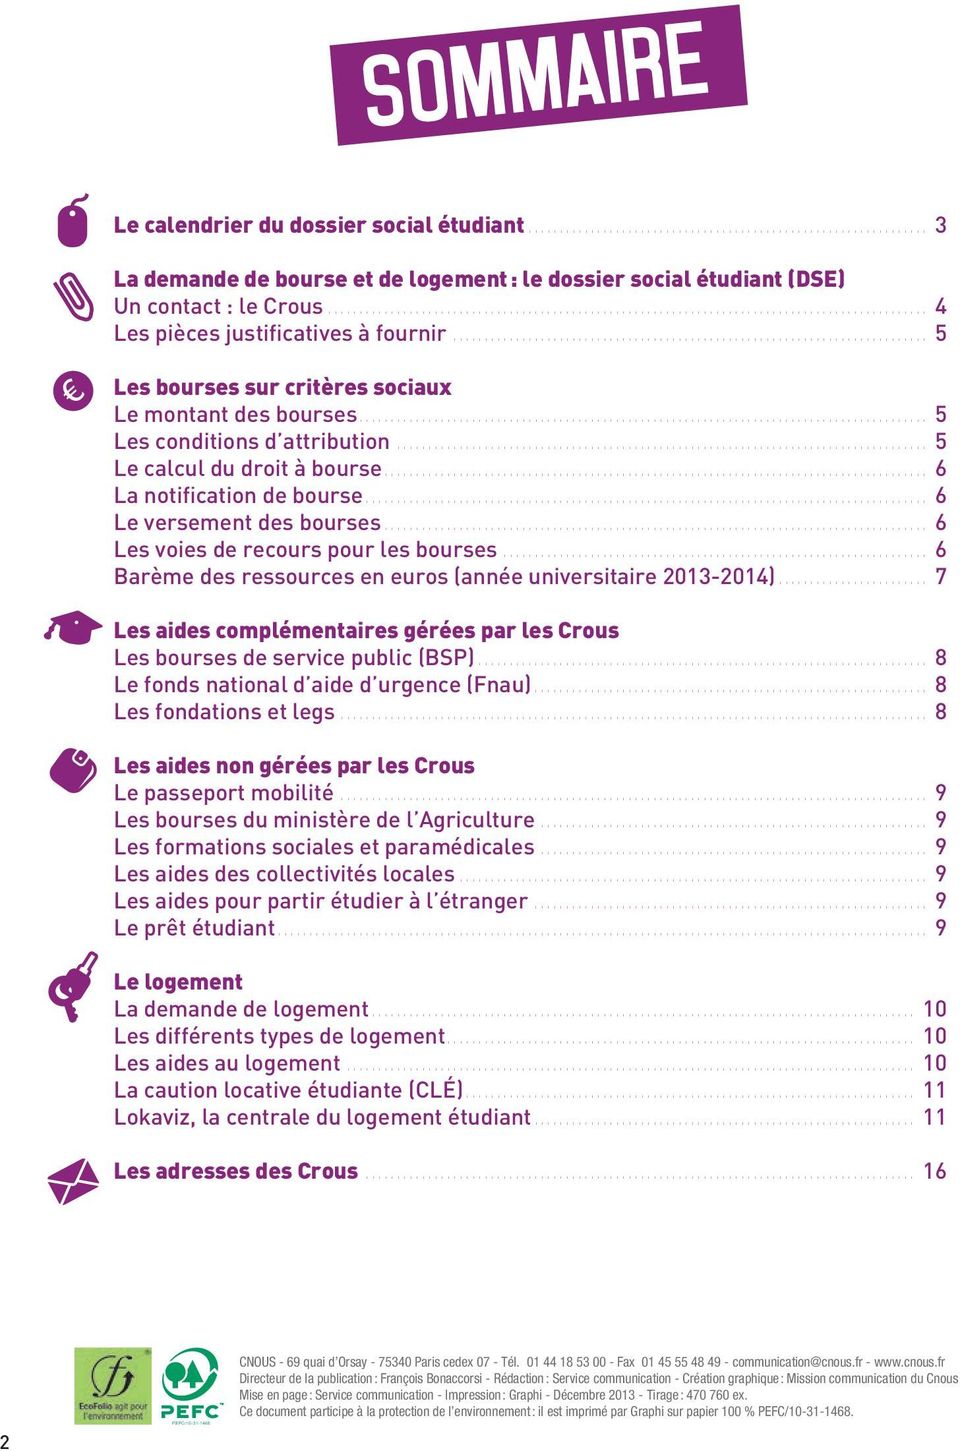 .. 6 Le versement des bourses... 6 Les voies de recours pour les bourses... 6 Barème des ressources en euros (année universitaire 2013-2014).